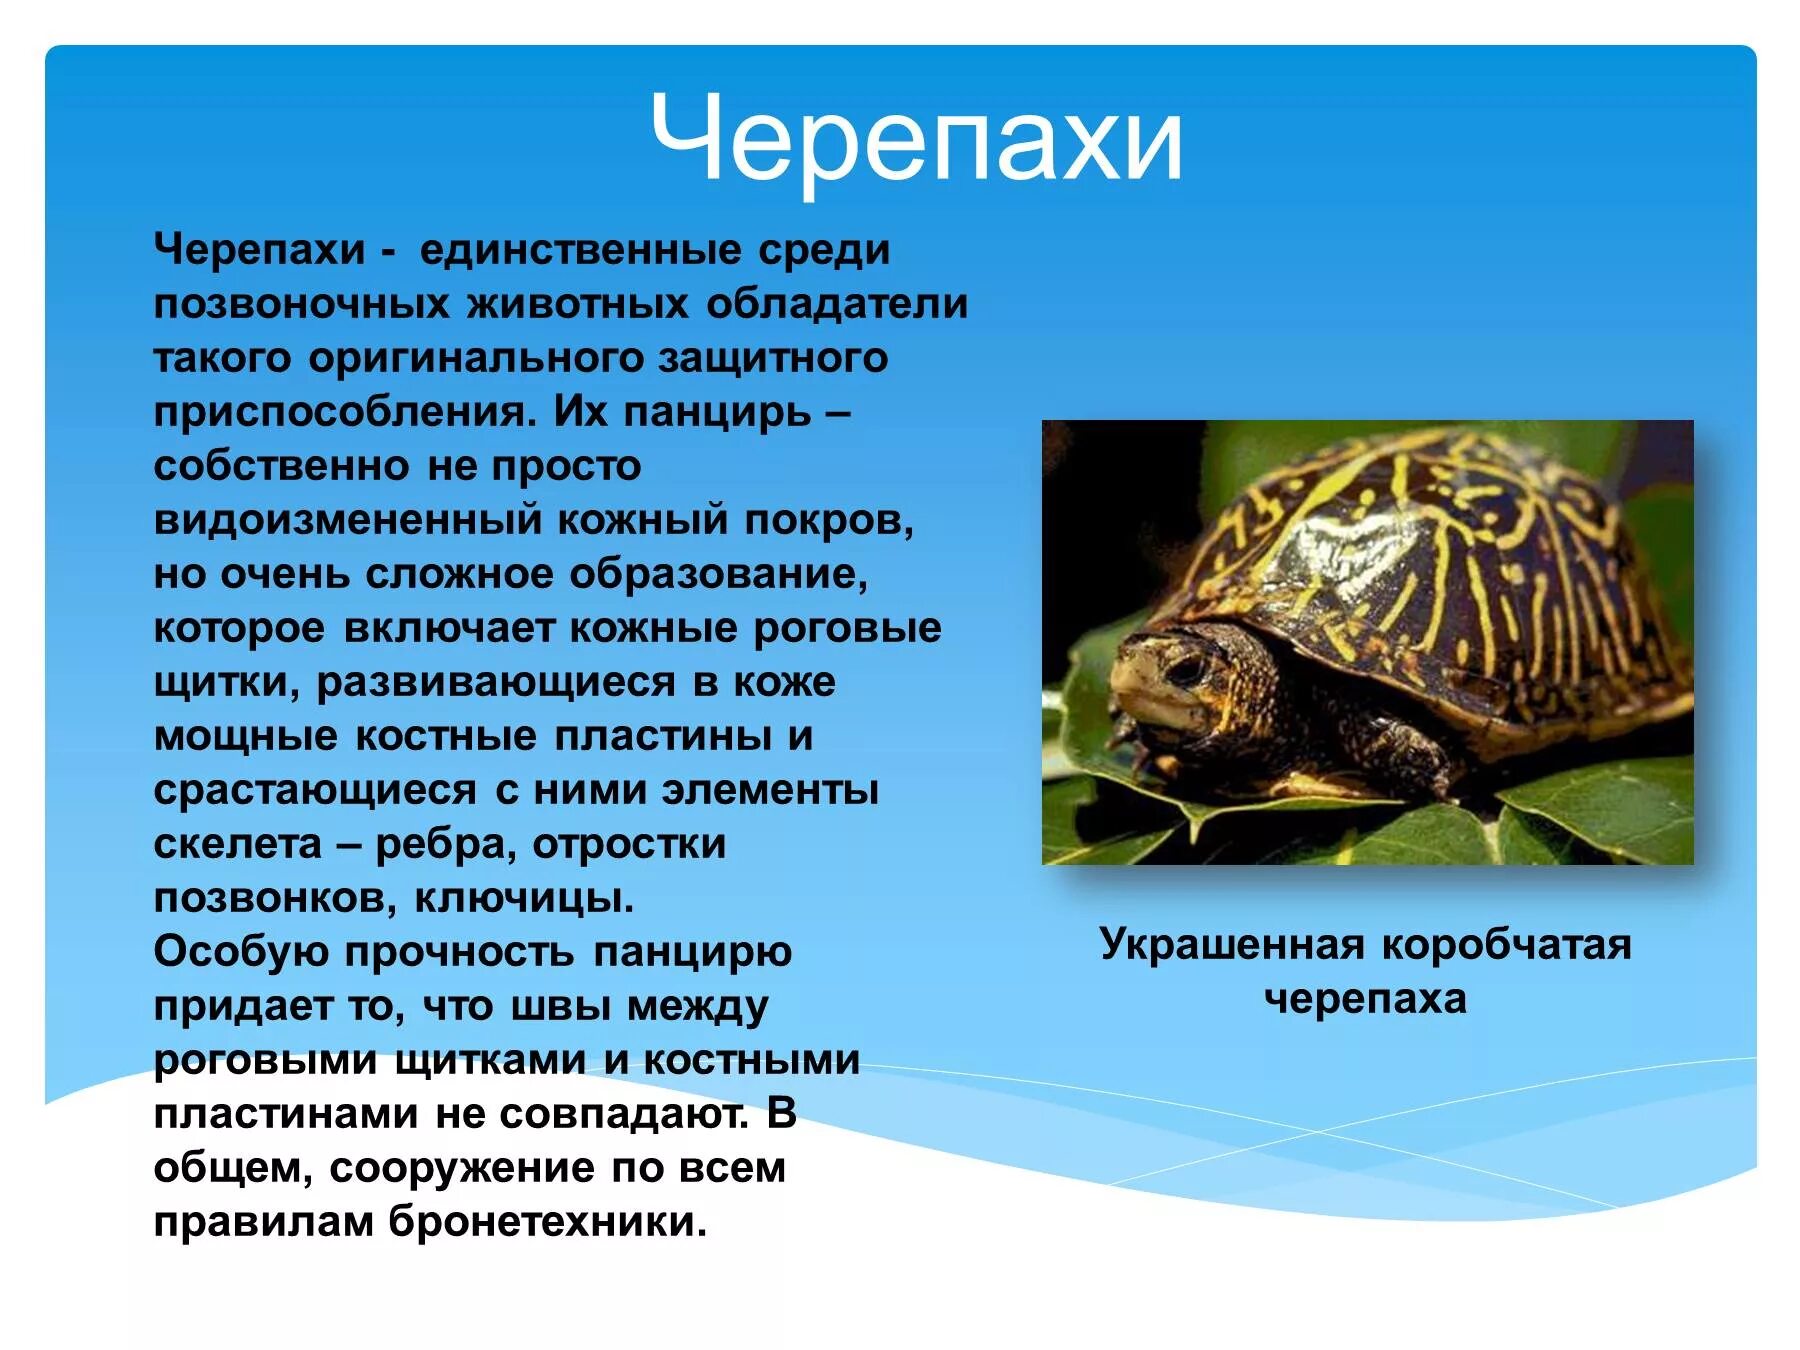 Приспособление позвоночного животного. Презентация на тему черепахи. Позвоночные животные. Информация о черепахе. Пресноводные черепахи презентация.